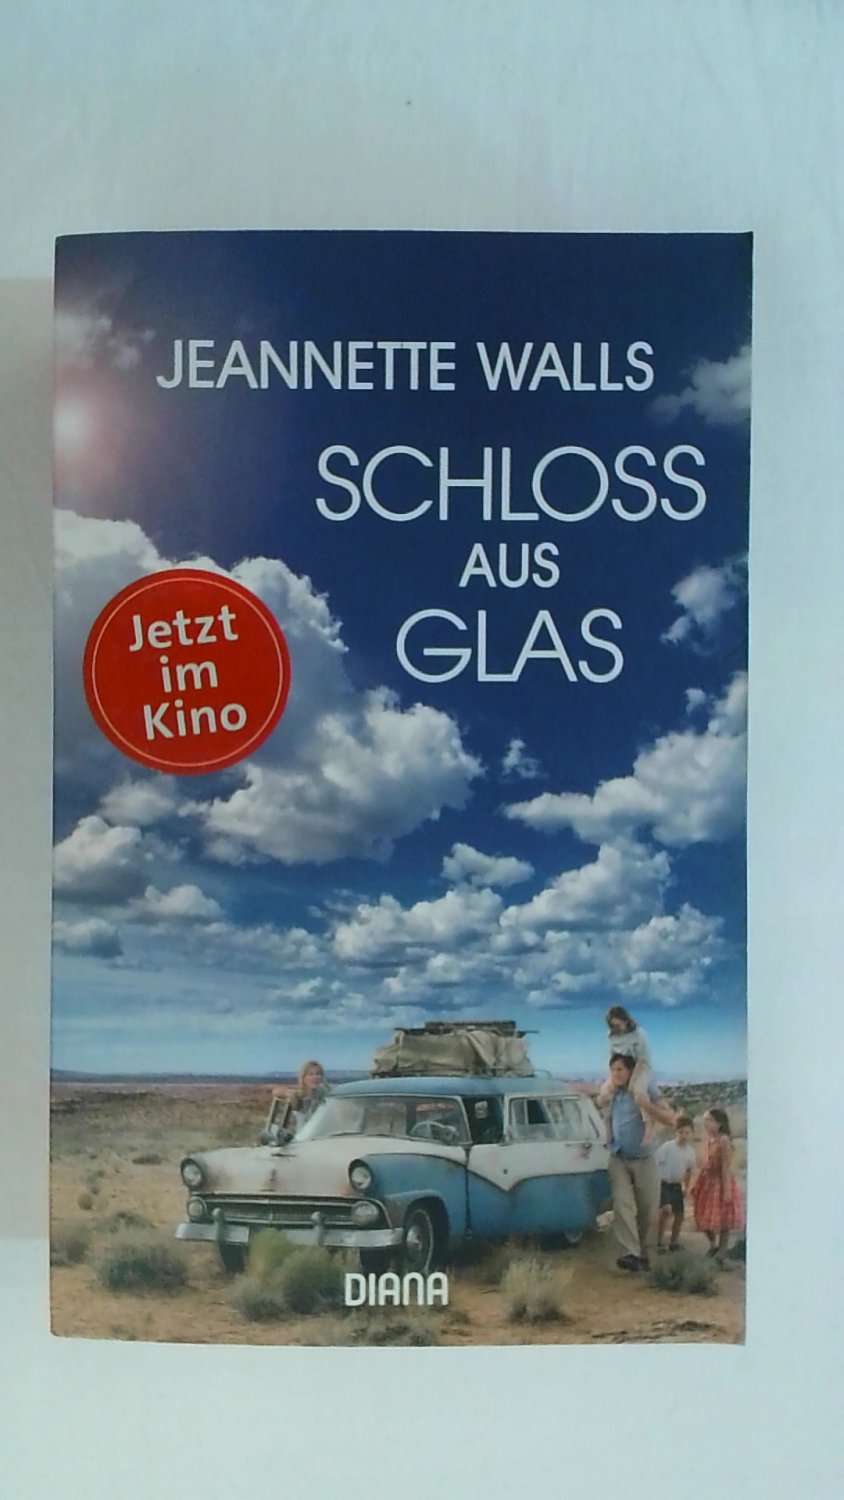 Schloss aus Glas von Jeannette Walls (Buch und Film)